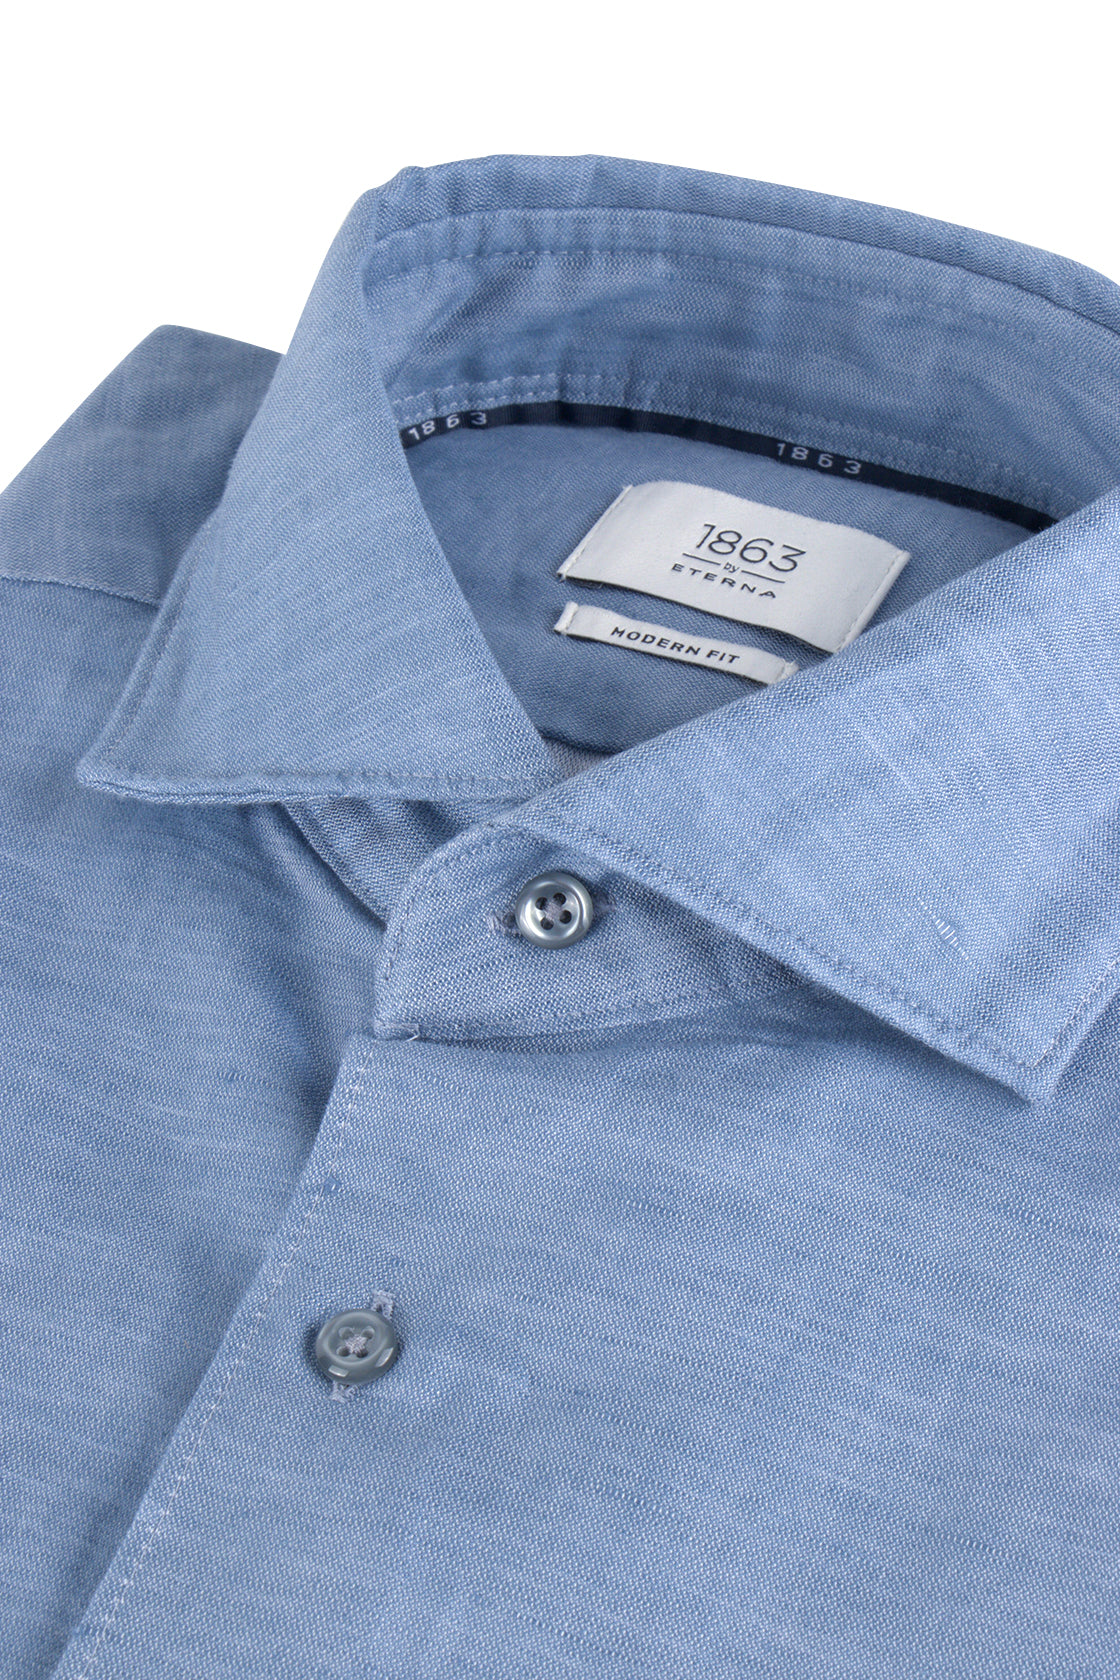 Eterna XS82 Mod Fit Linen Shirt Blue